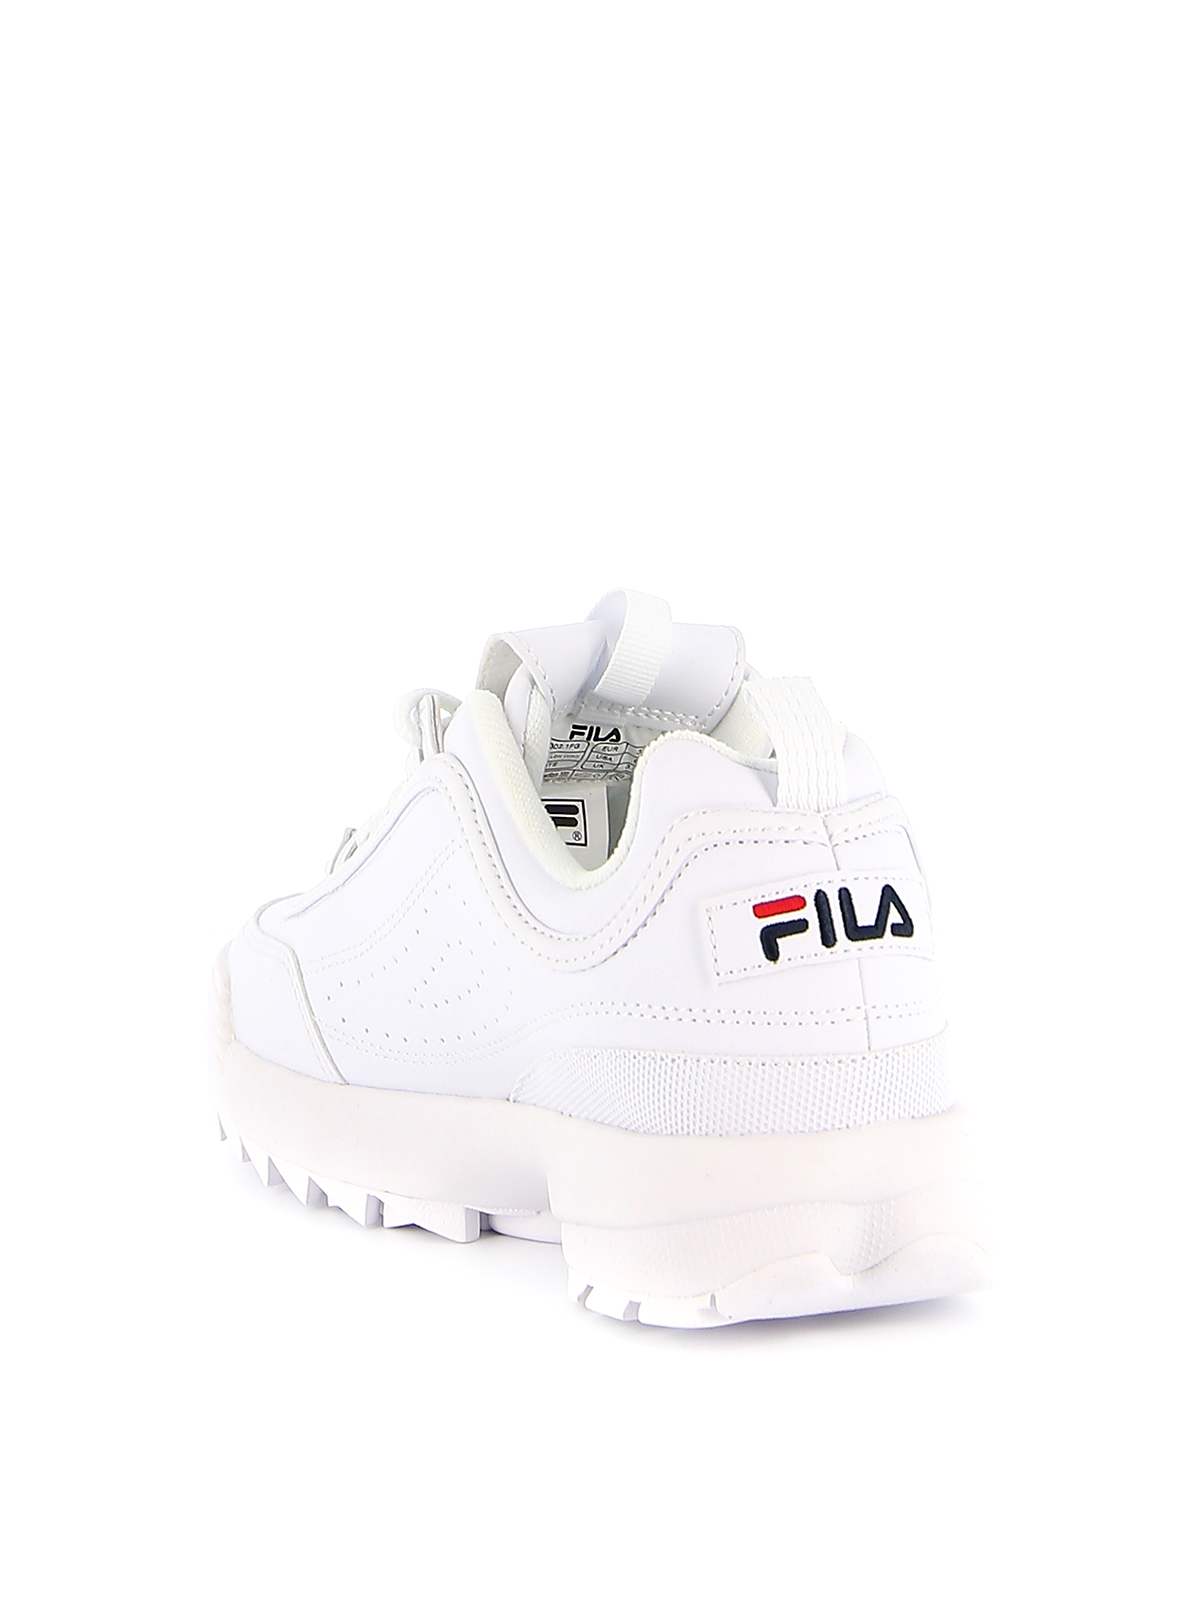 Fila - Distruptor Low sneakers - trainers - 10103021FG | iKRIX.com